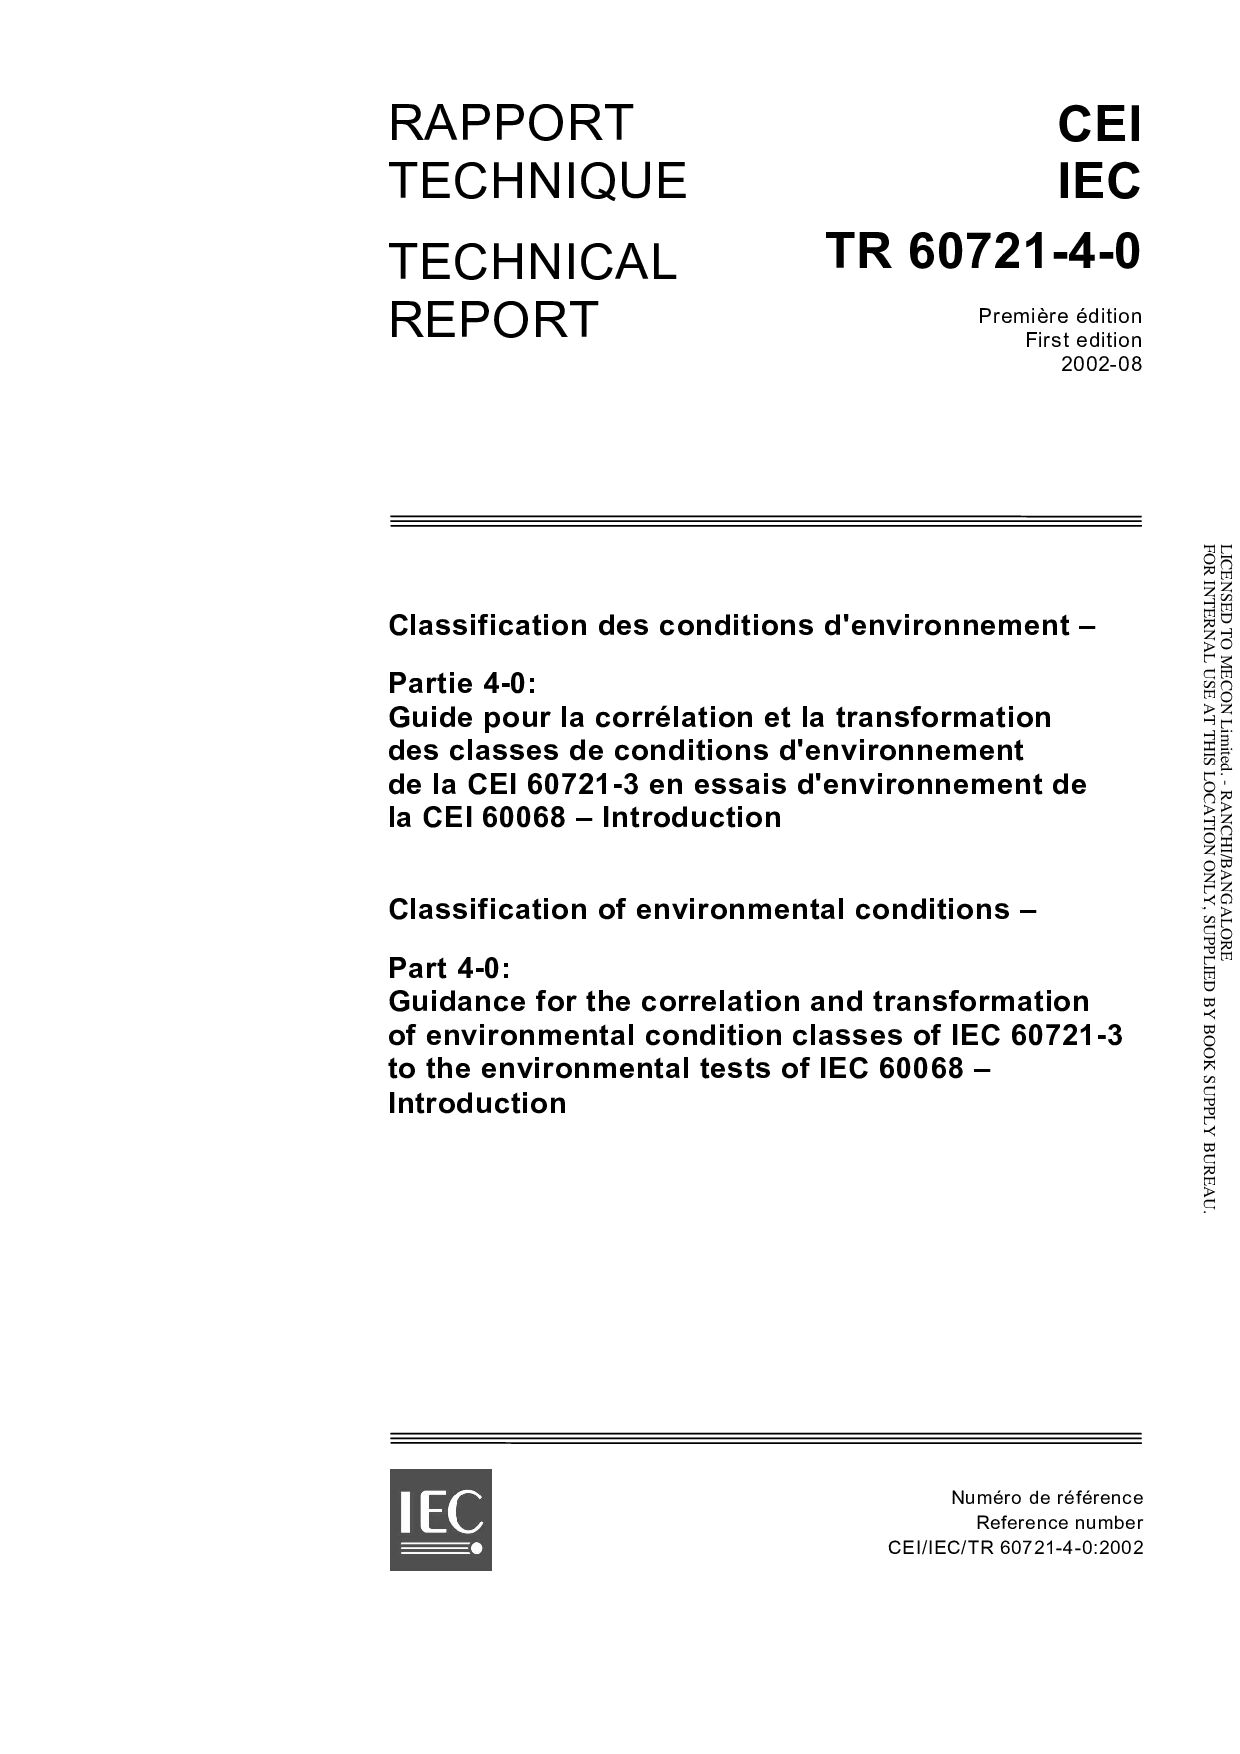 IEC TR 60721-4-0:2002